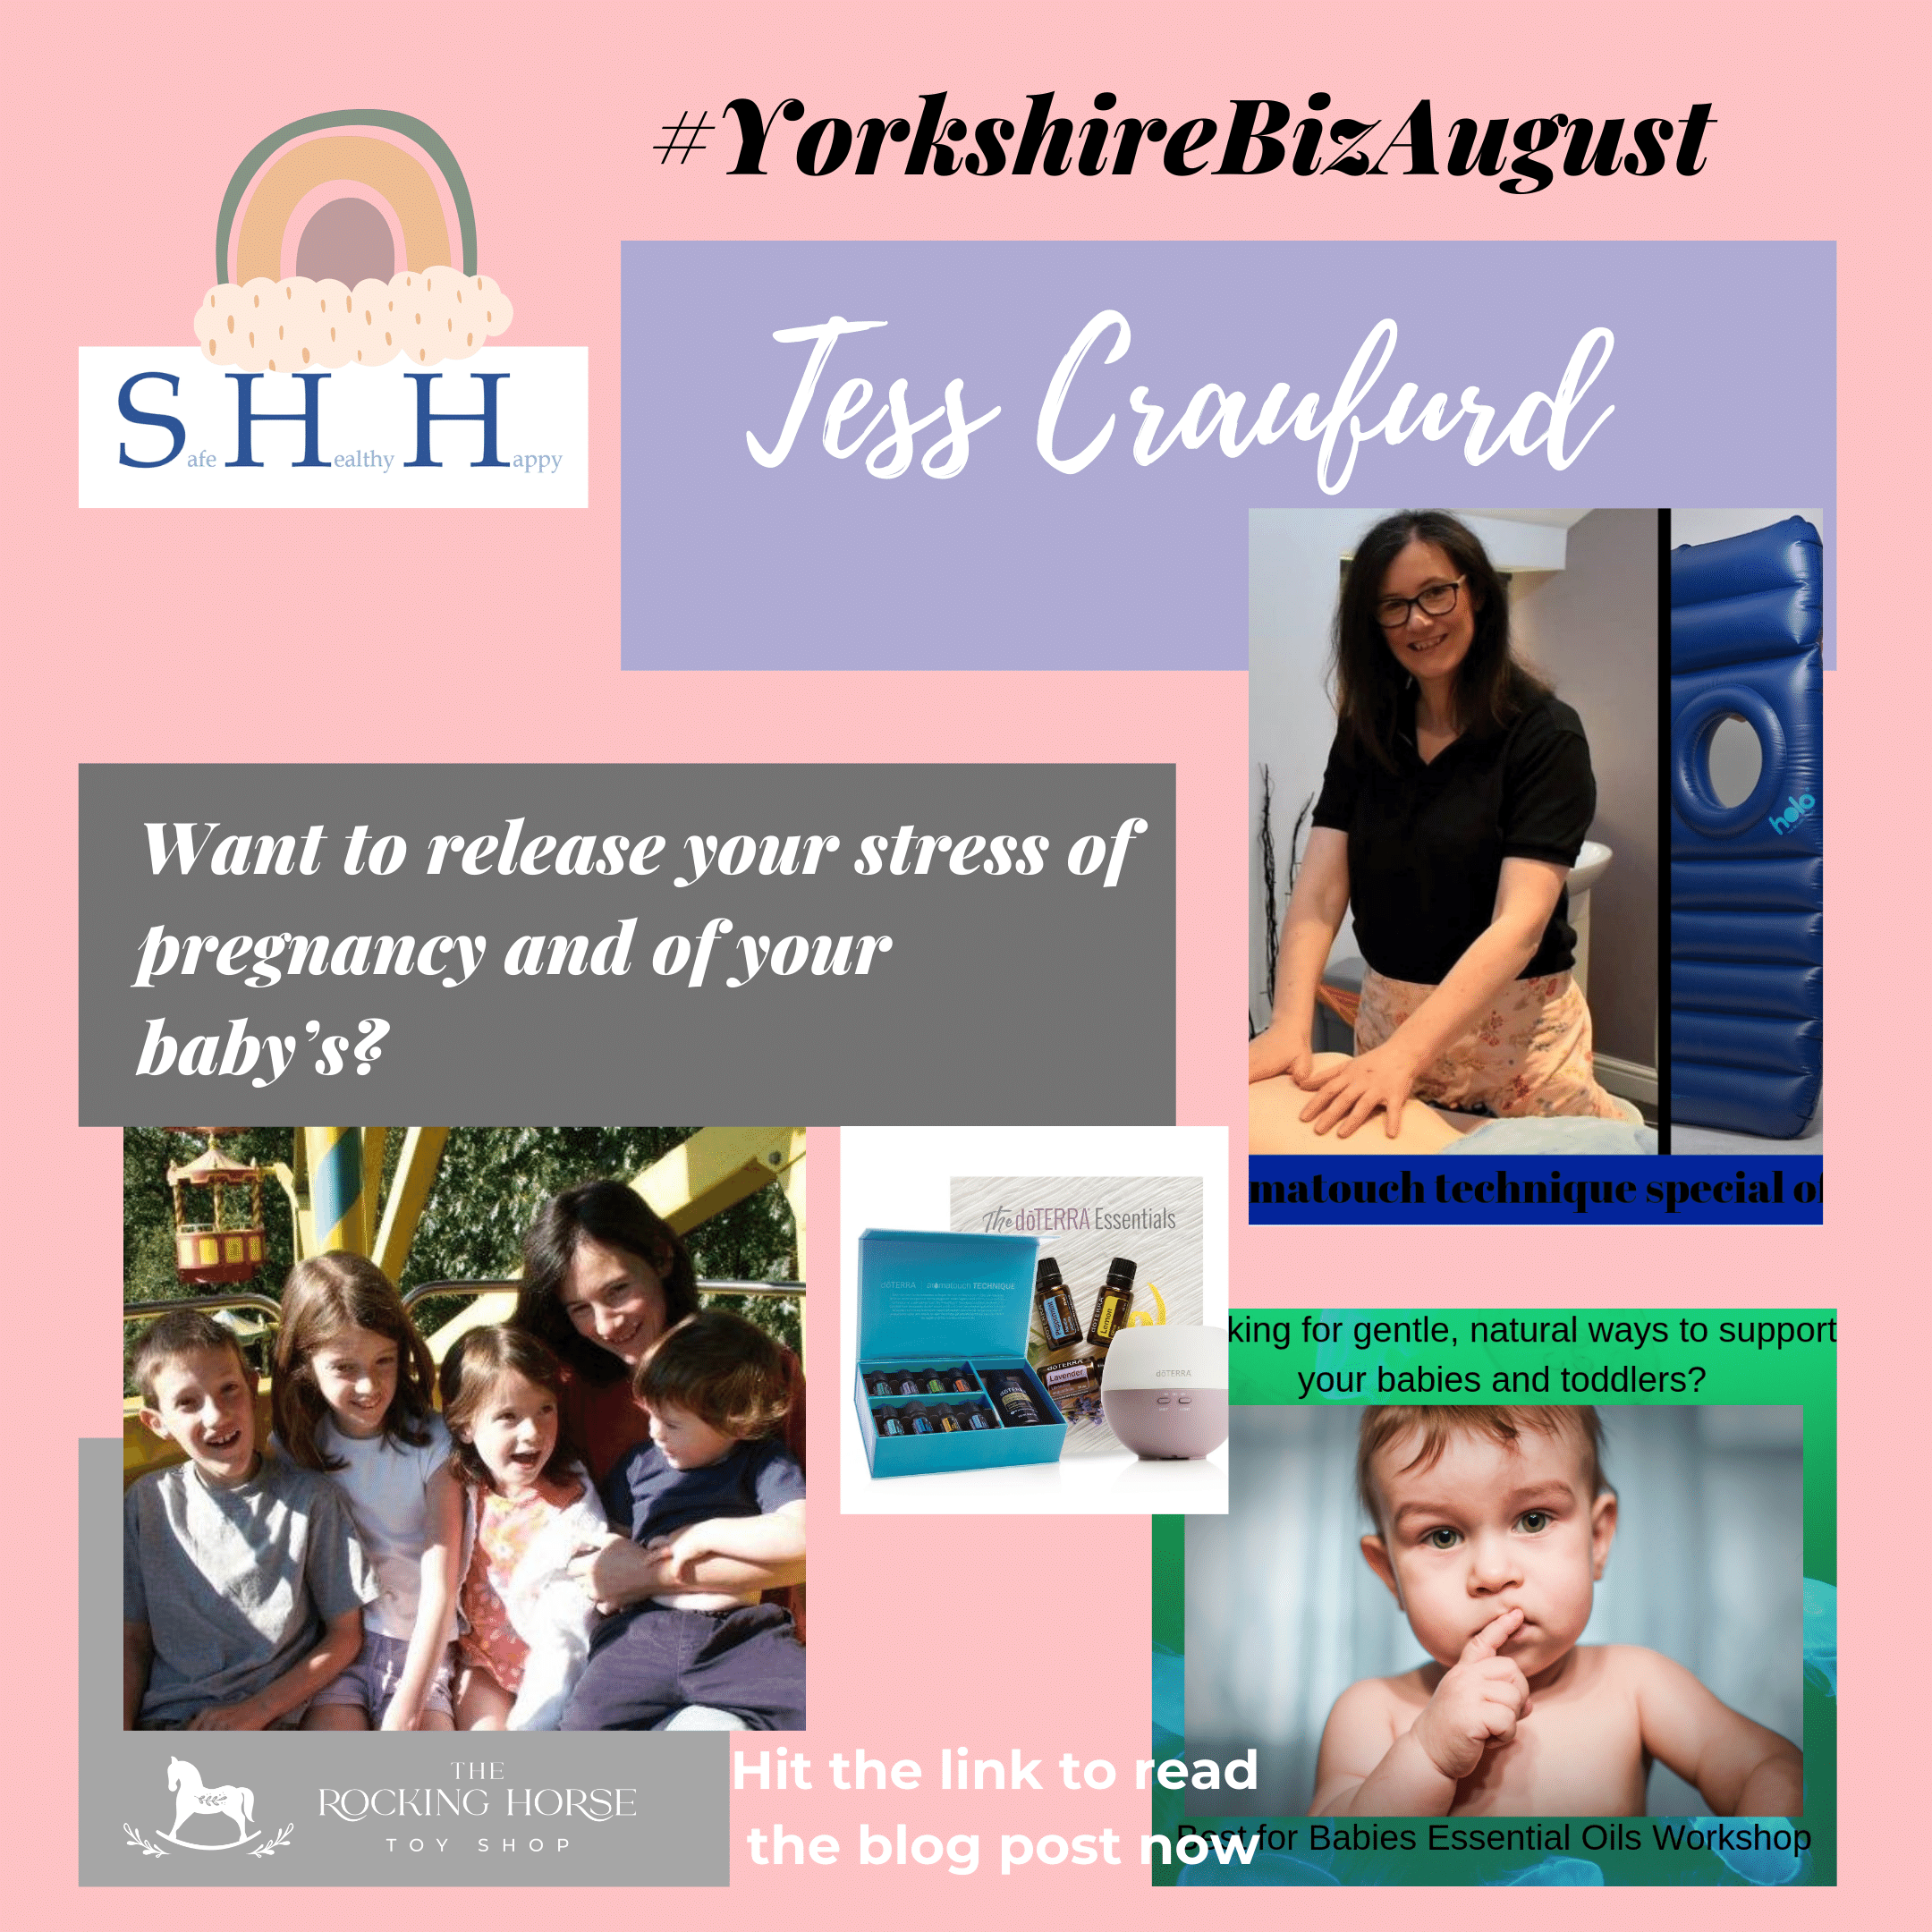 Yorkshire Biz August 16 - Tess Craufurd - Safe Healthy Happy